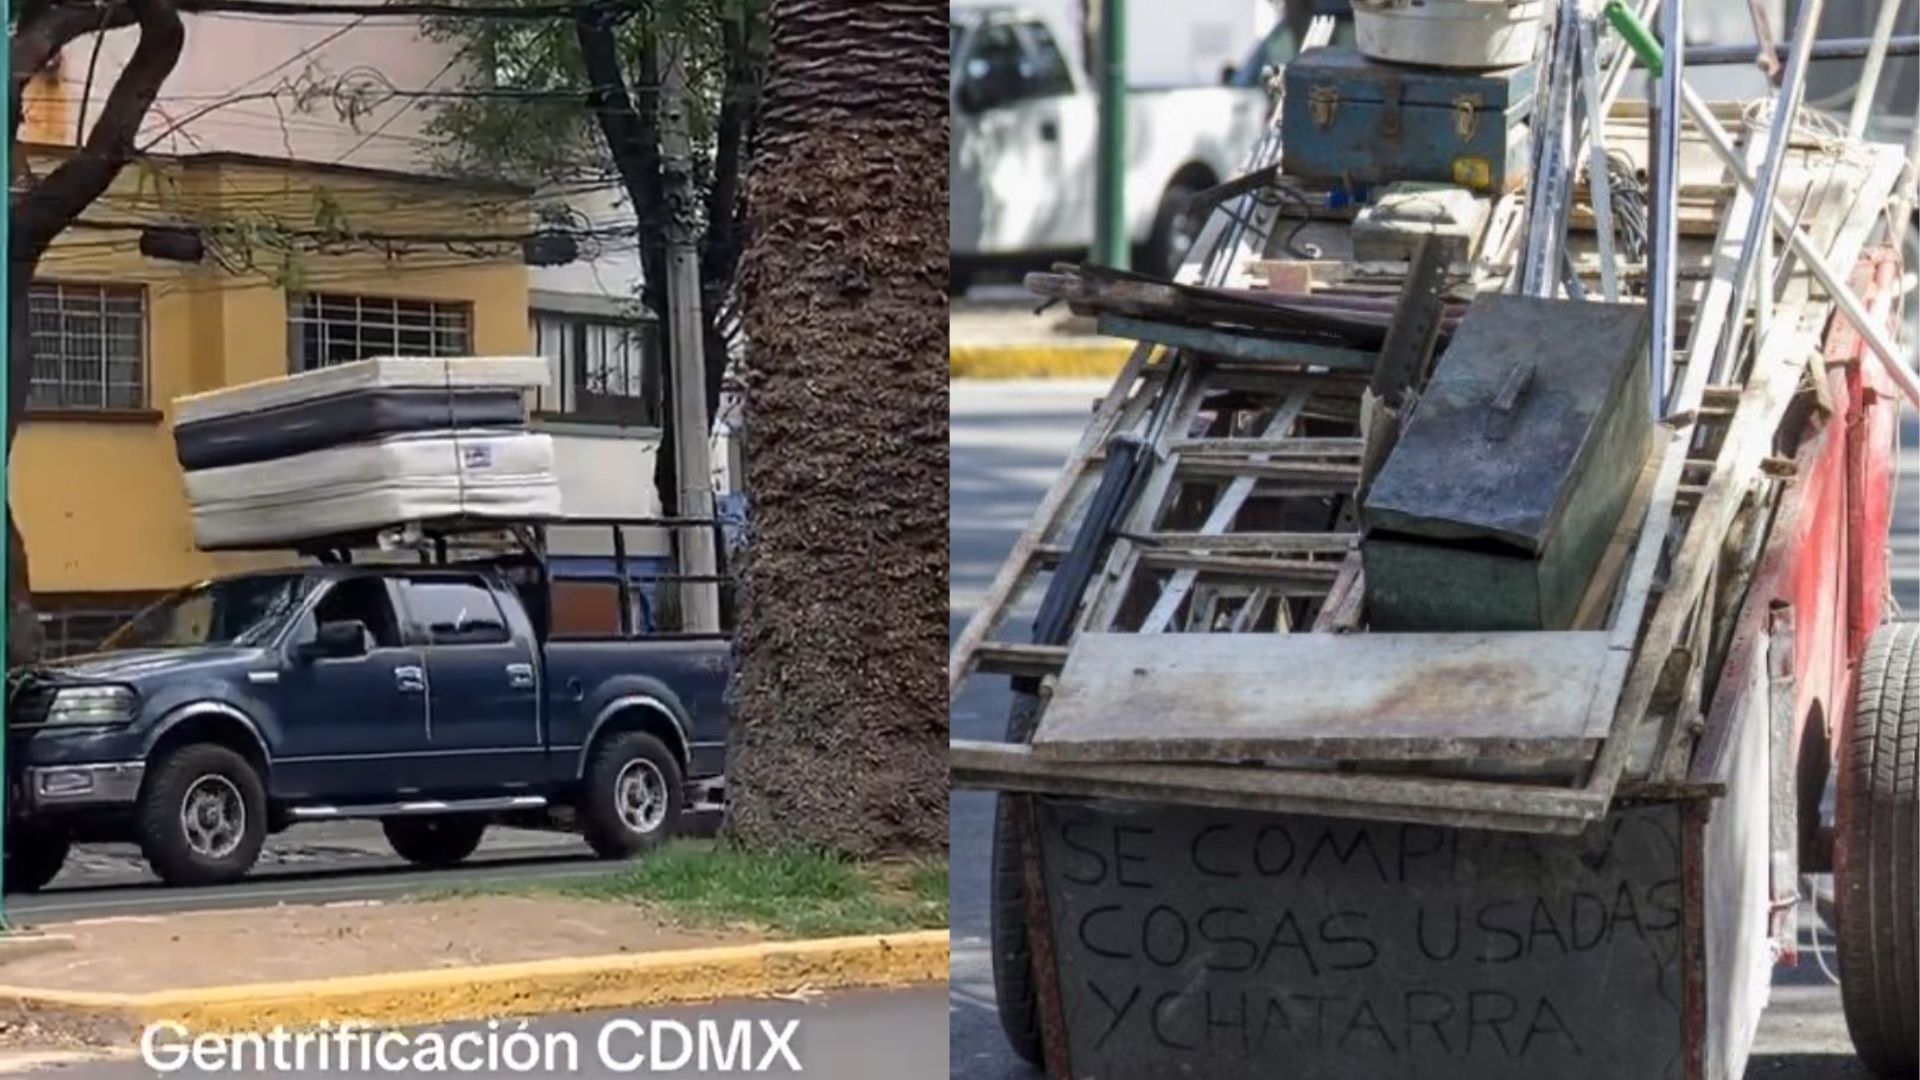 Audio de “fierro viejo” en inglés en calles de la CDMX despertó indignación